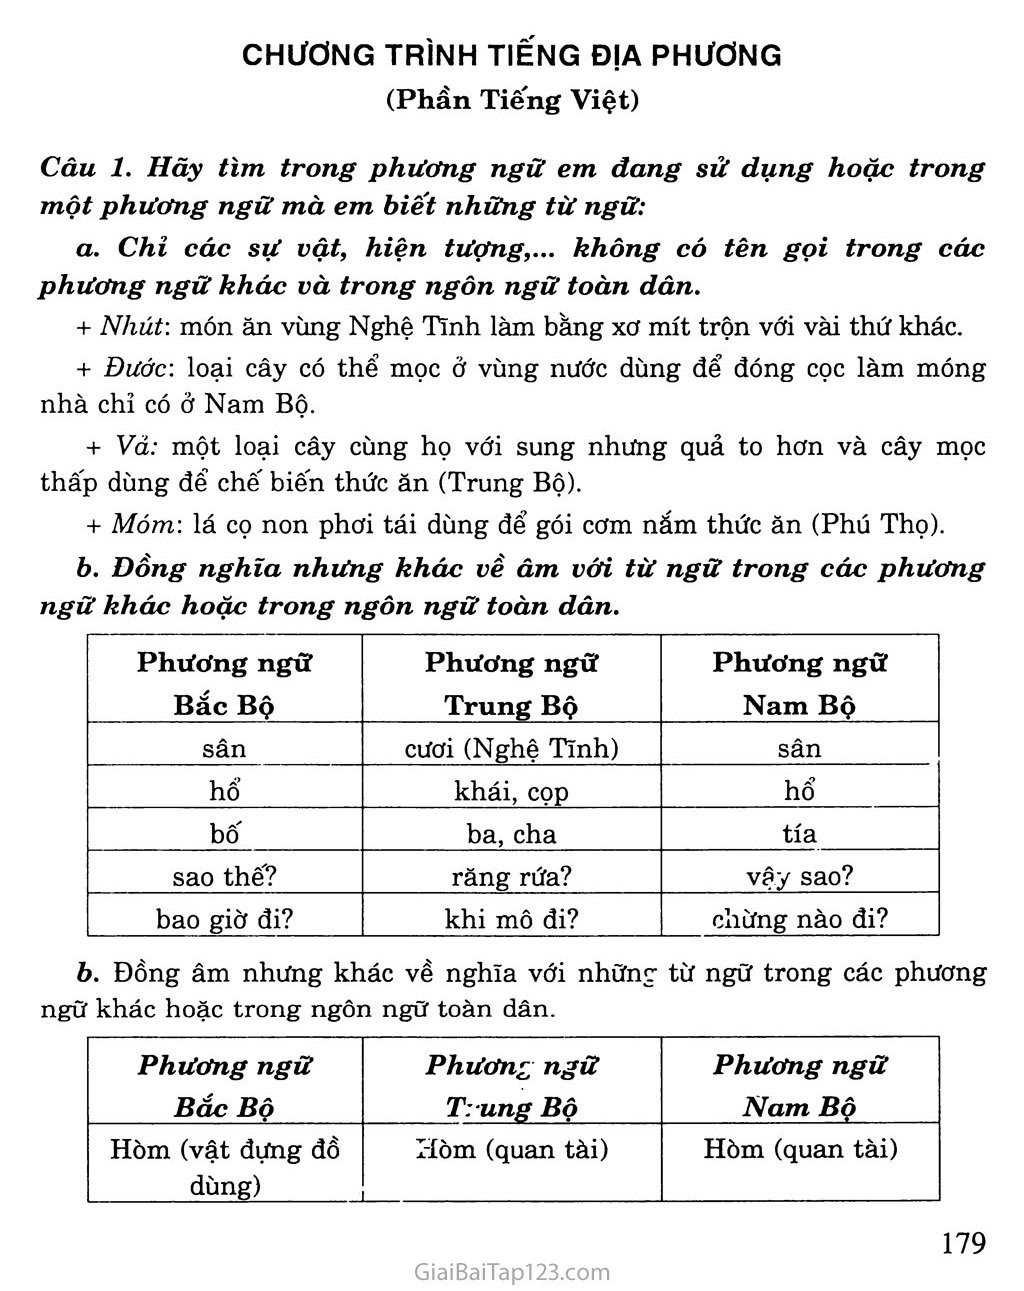 Chương trình địa phương (phần Tiếng Việt) trang 1